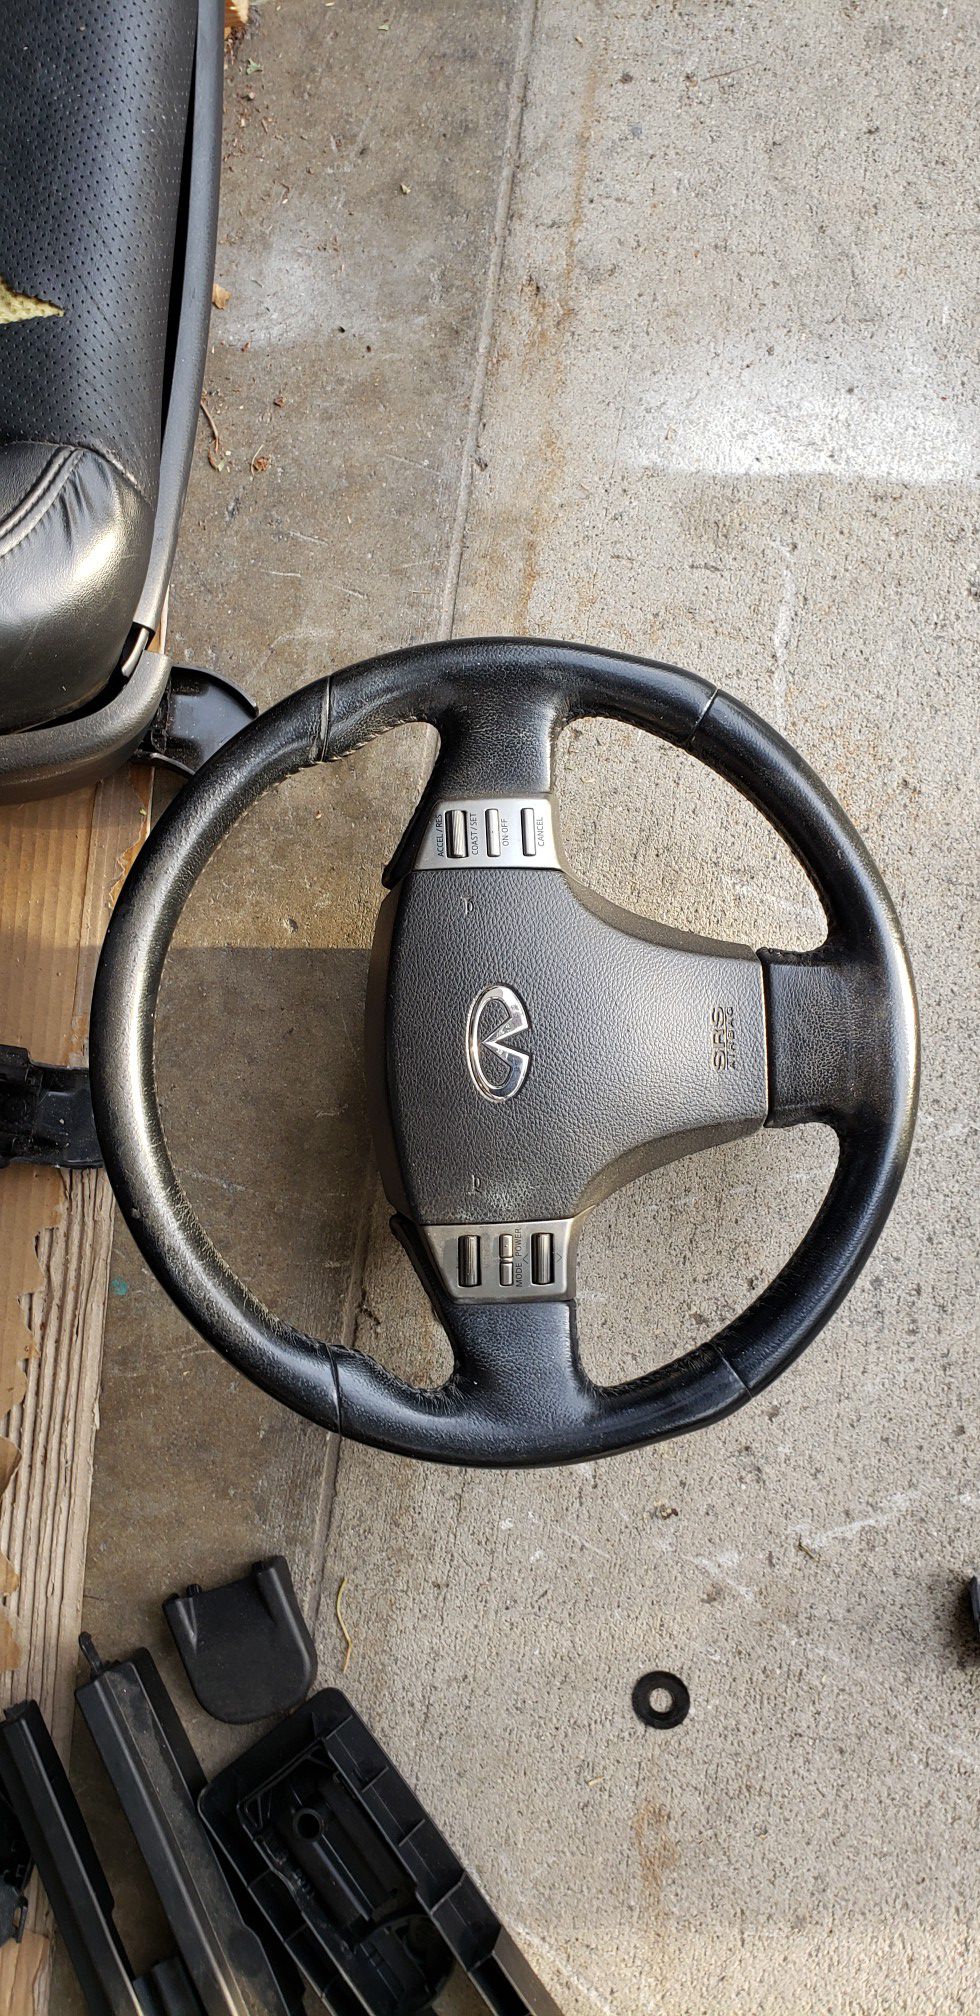 2004 g35 steering wheel